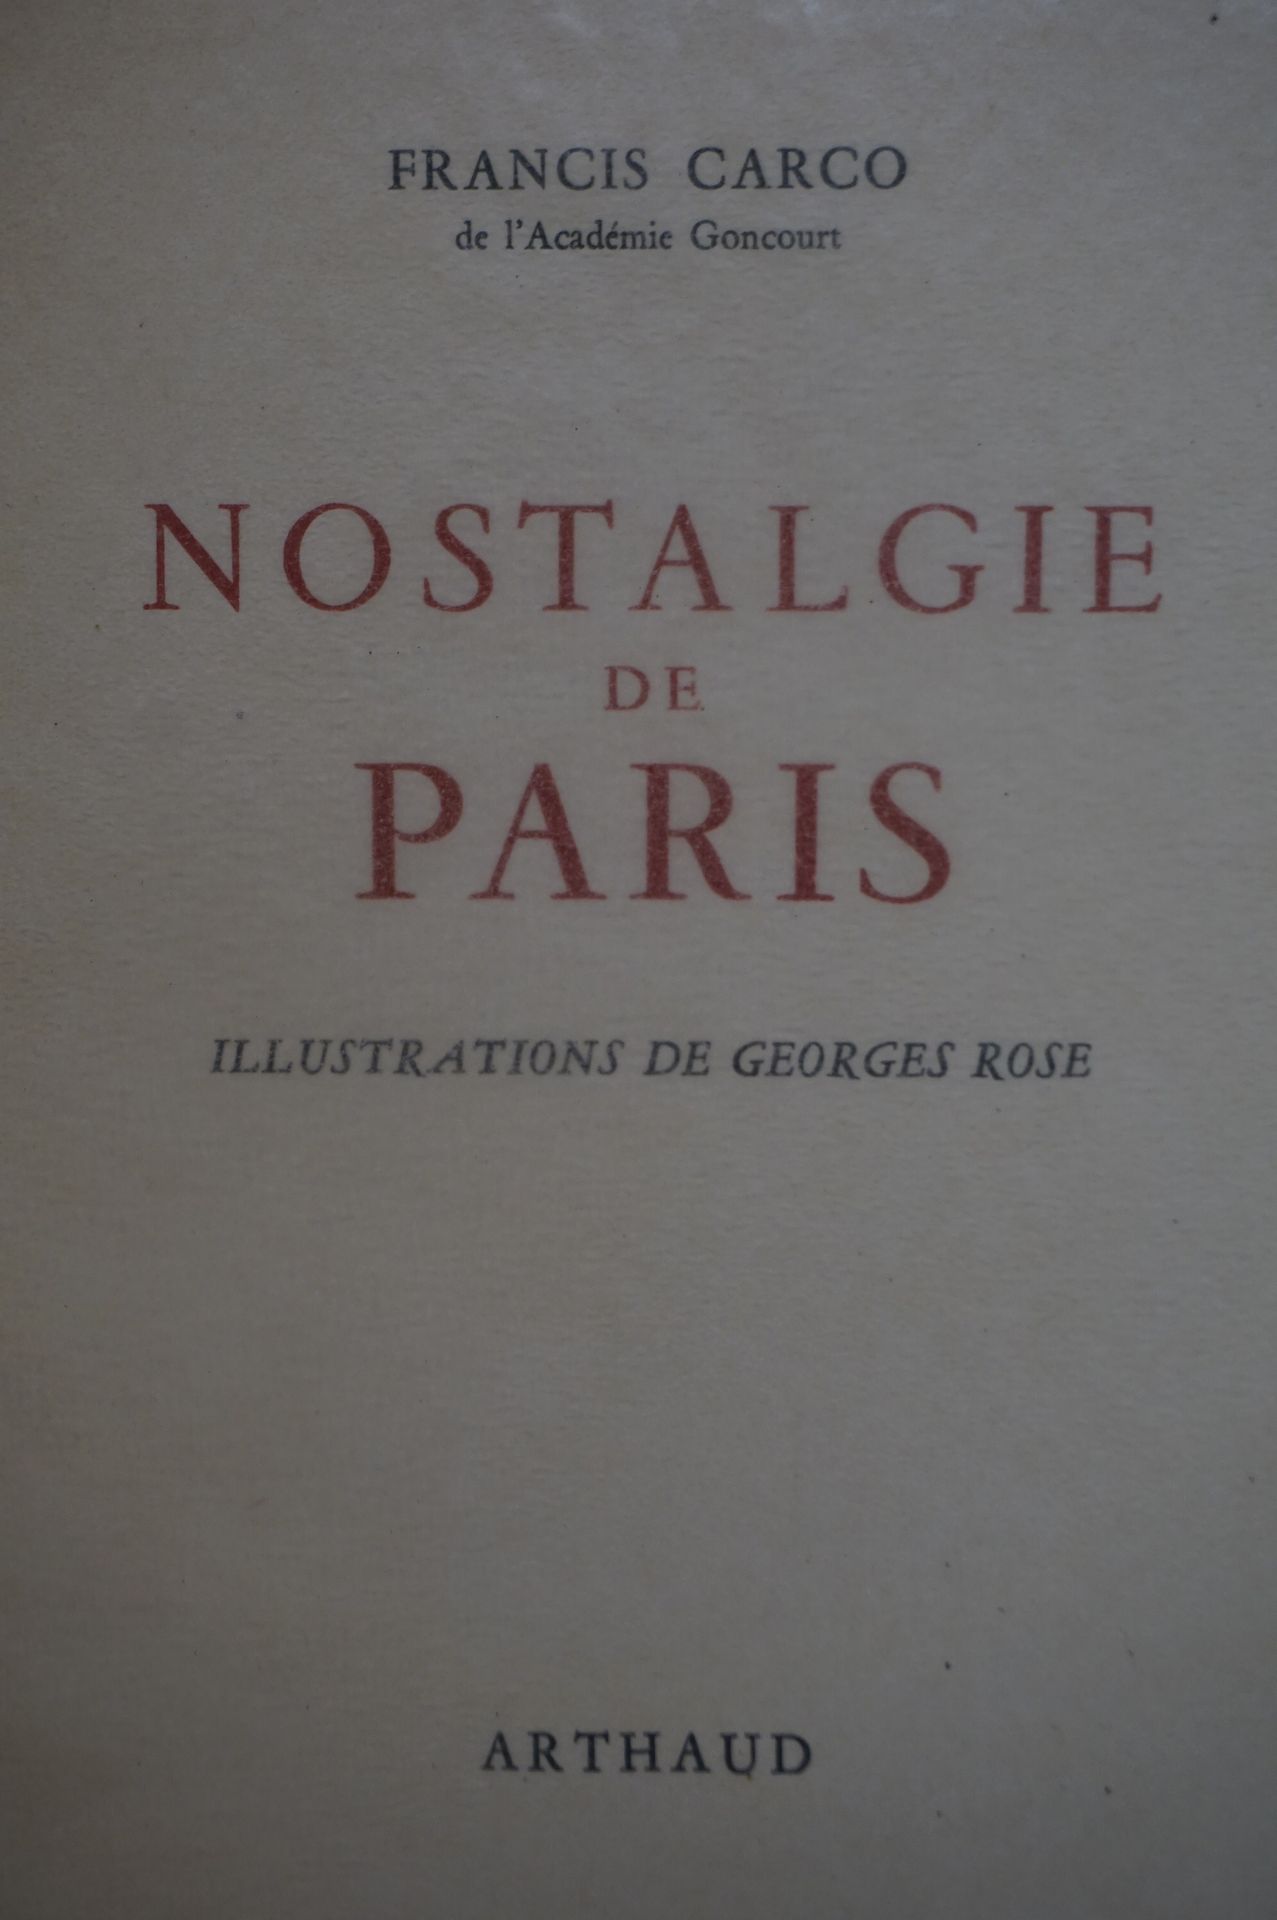 Null 卡科（弗朗西斯）。对巴黎的怀念。乔治-罗斯的插图。巴黎，Arthaud，1941年，8开本，封面、文件夹和滑套。安南牛皮纸版，共300册，其中50册有&hellip;